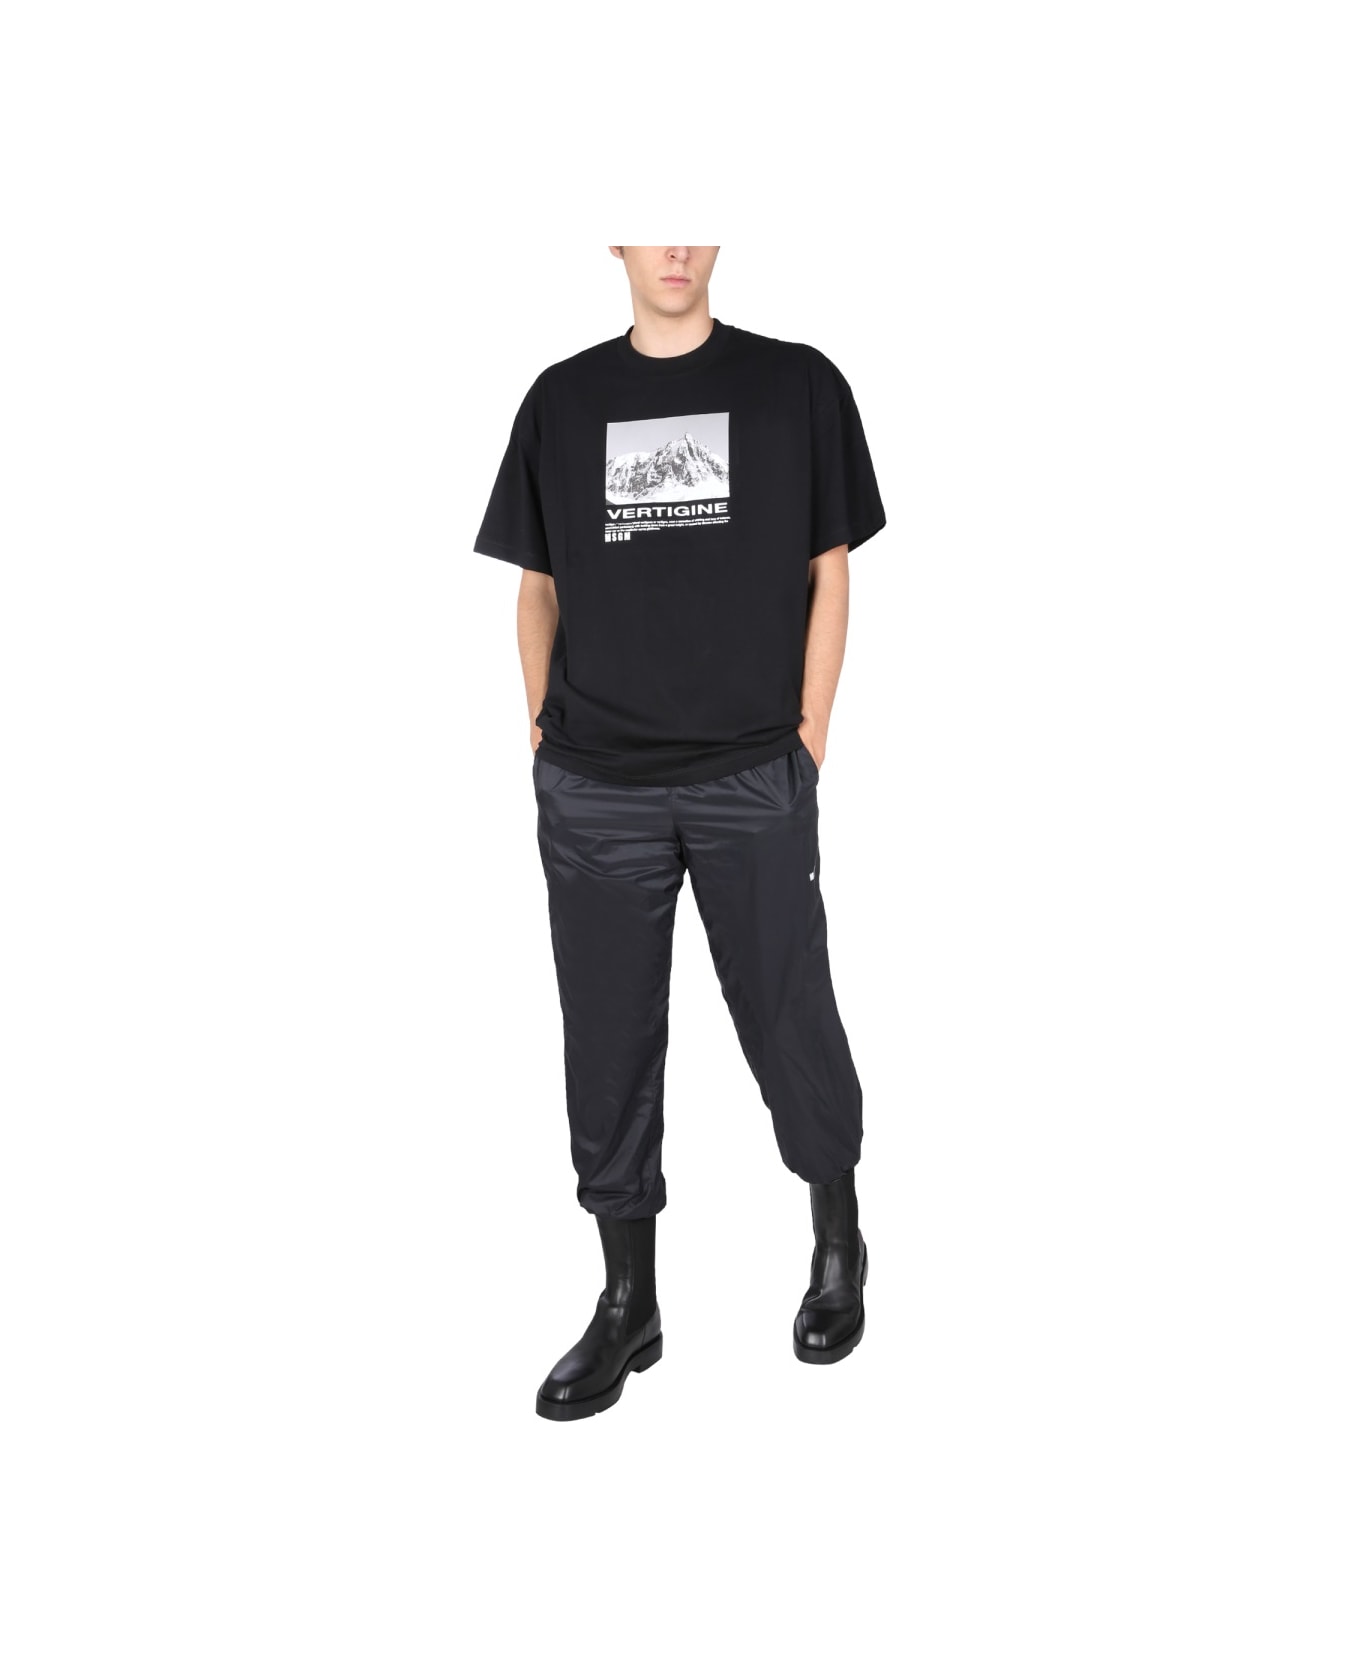 MSGM T-shirt With Vertigo Print - BLACK シャツ